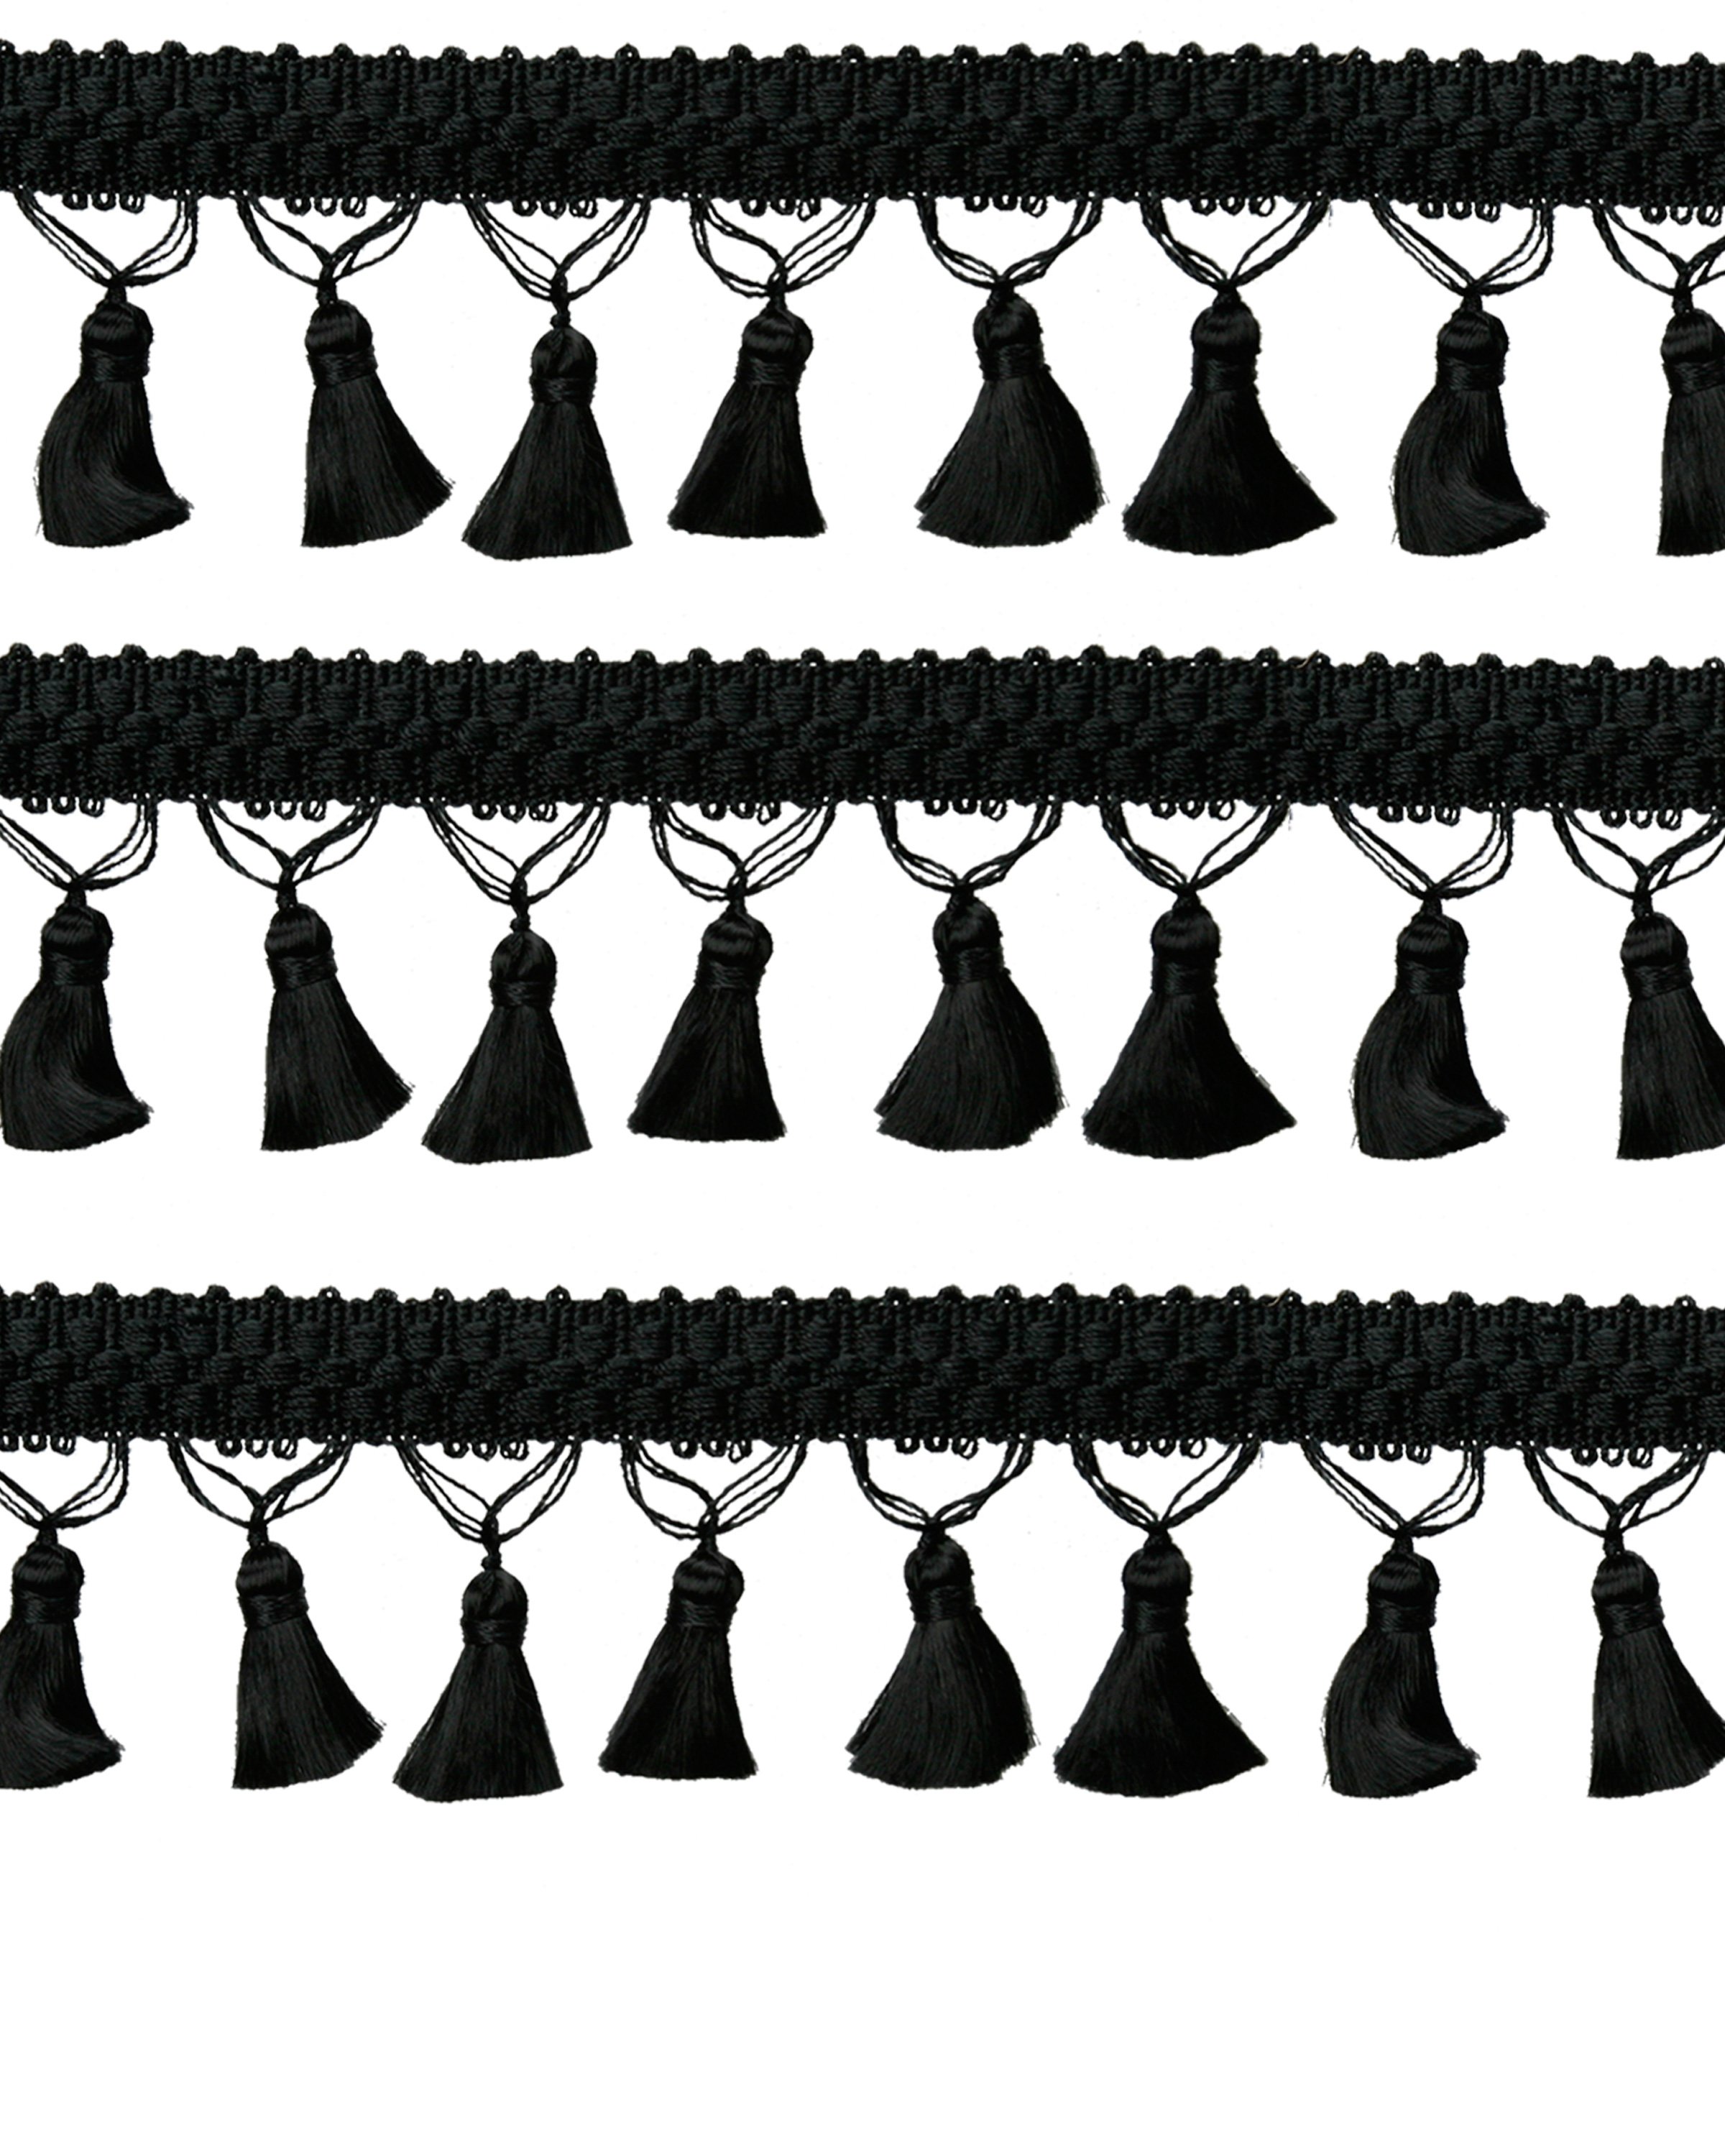 Fringe Tassels - Black 45mm Price is per 5 metres